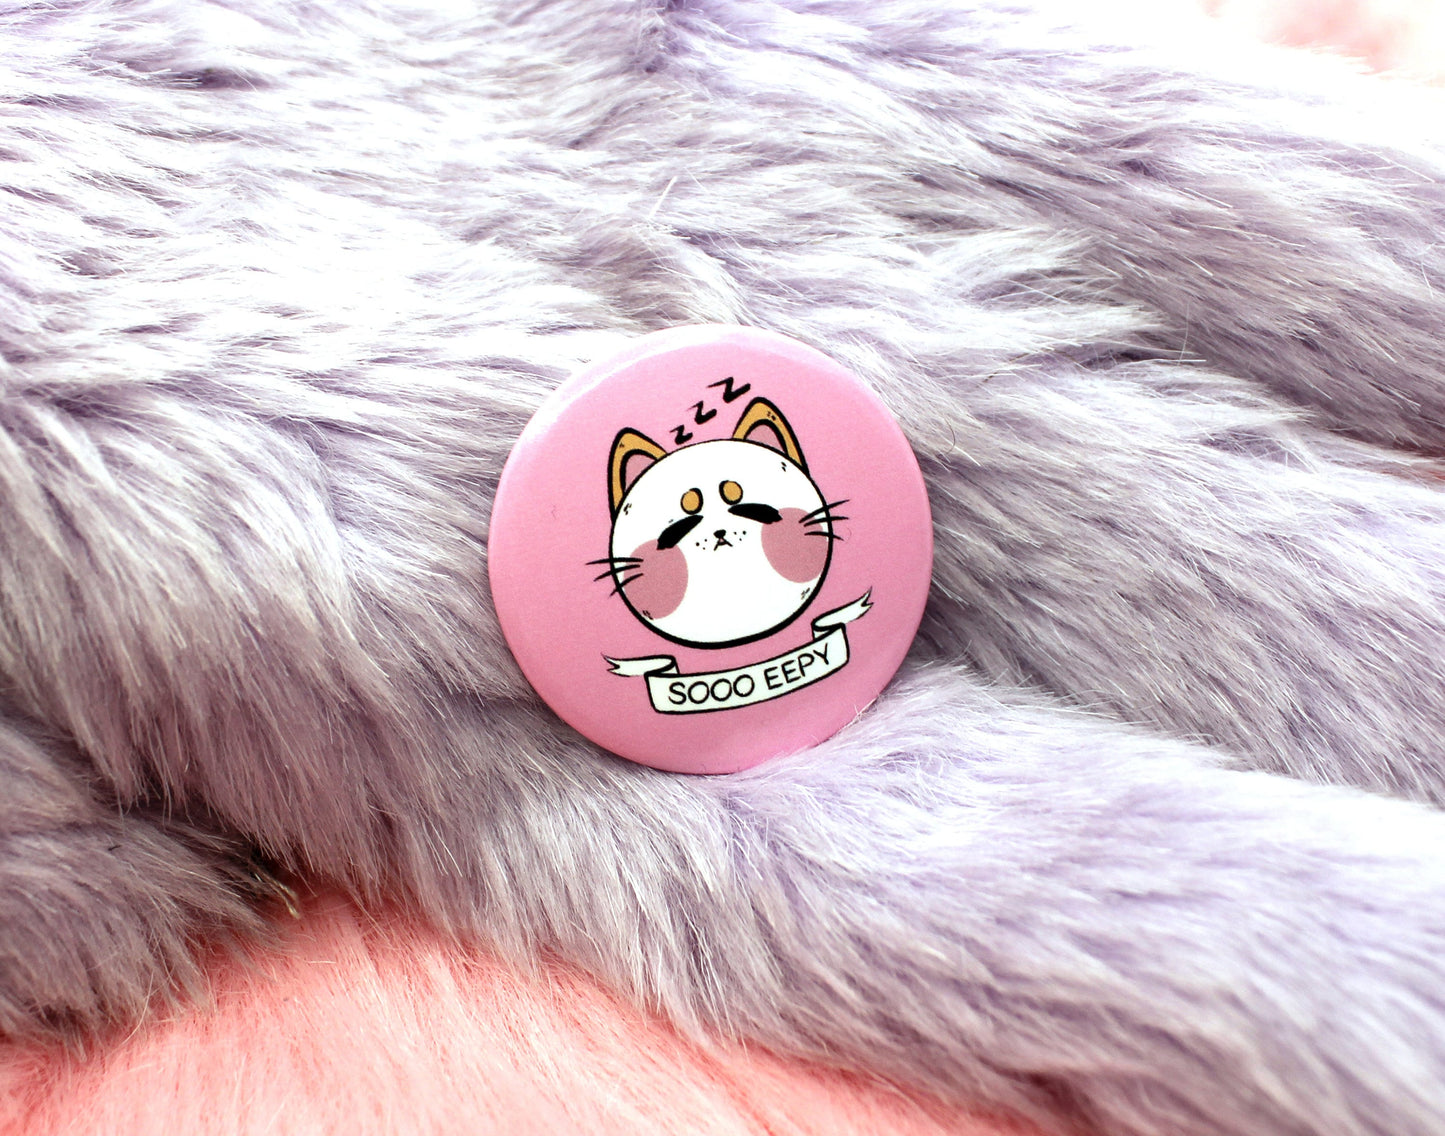 So Eepy Cat Badge (38mm)